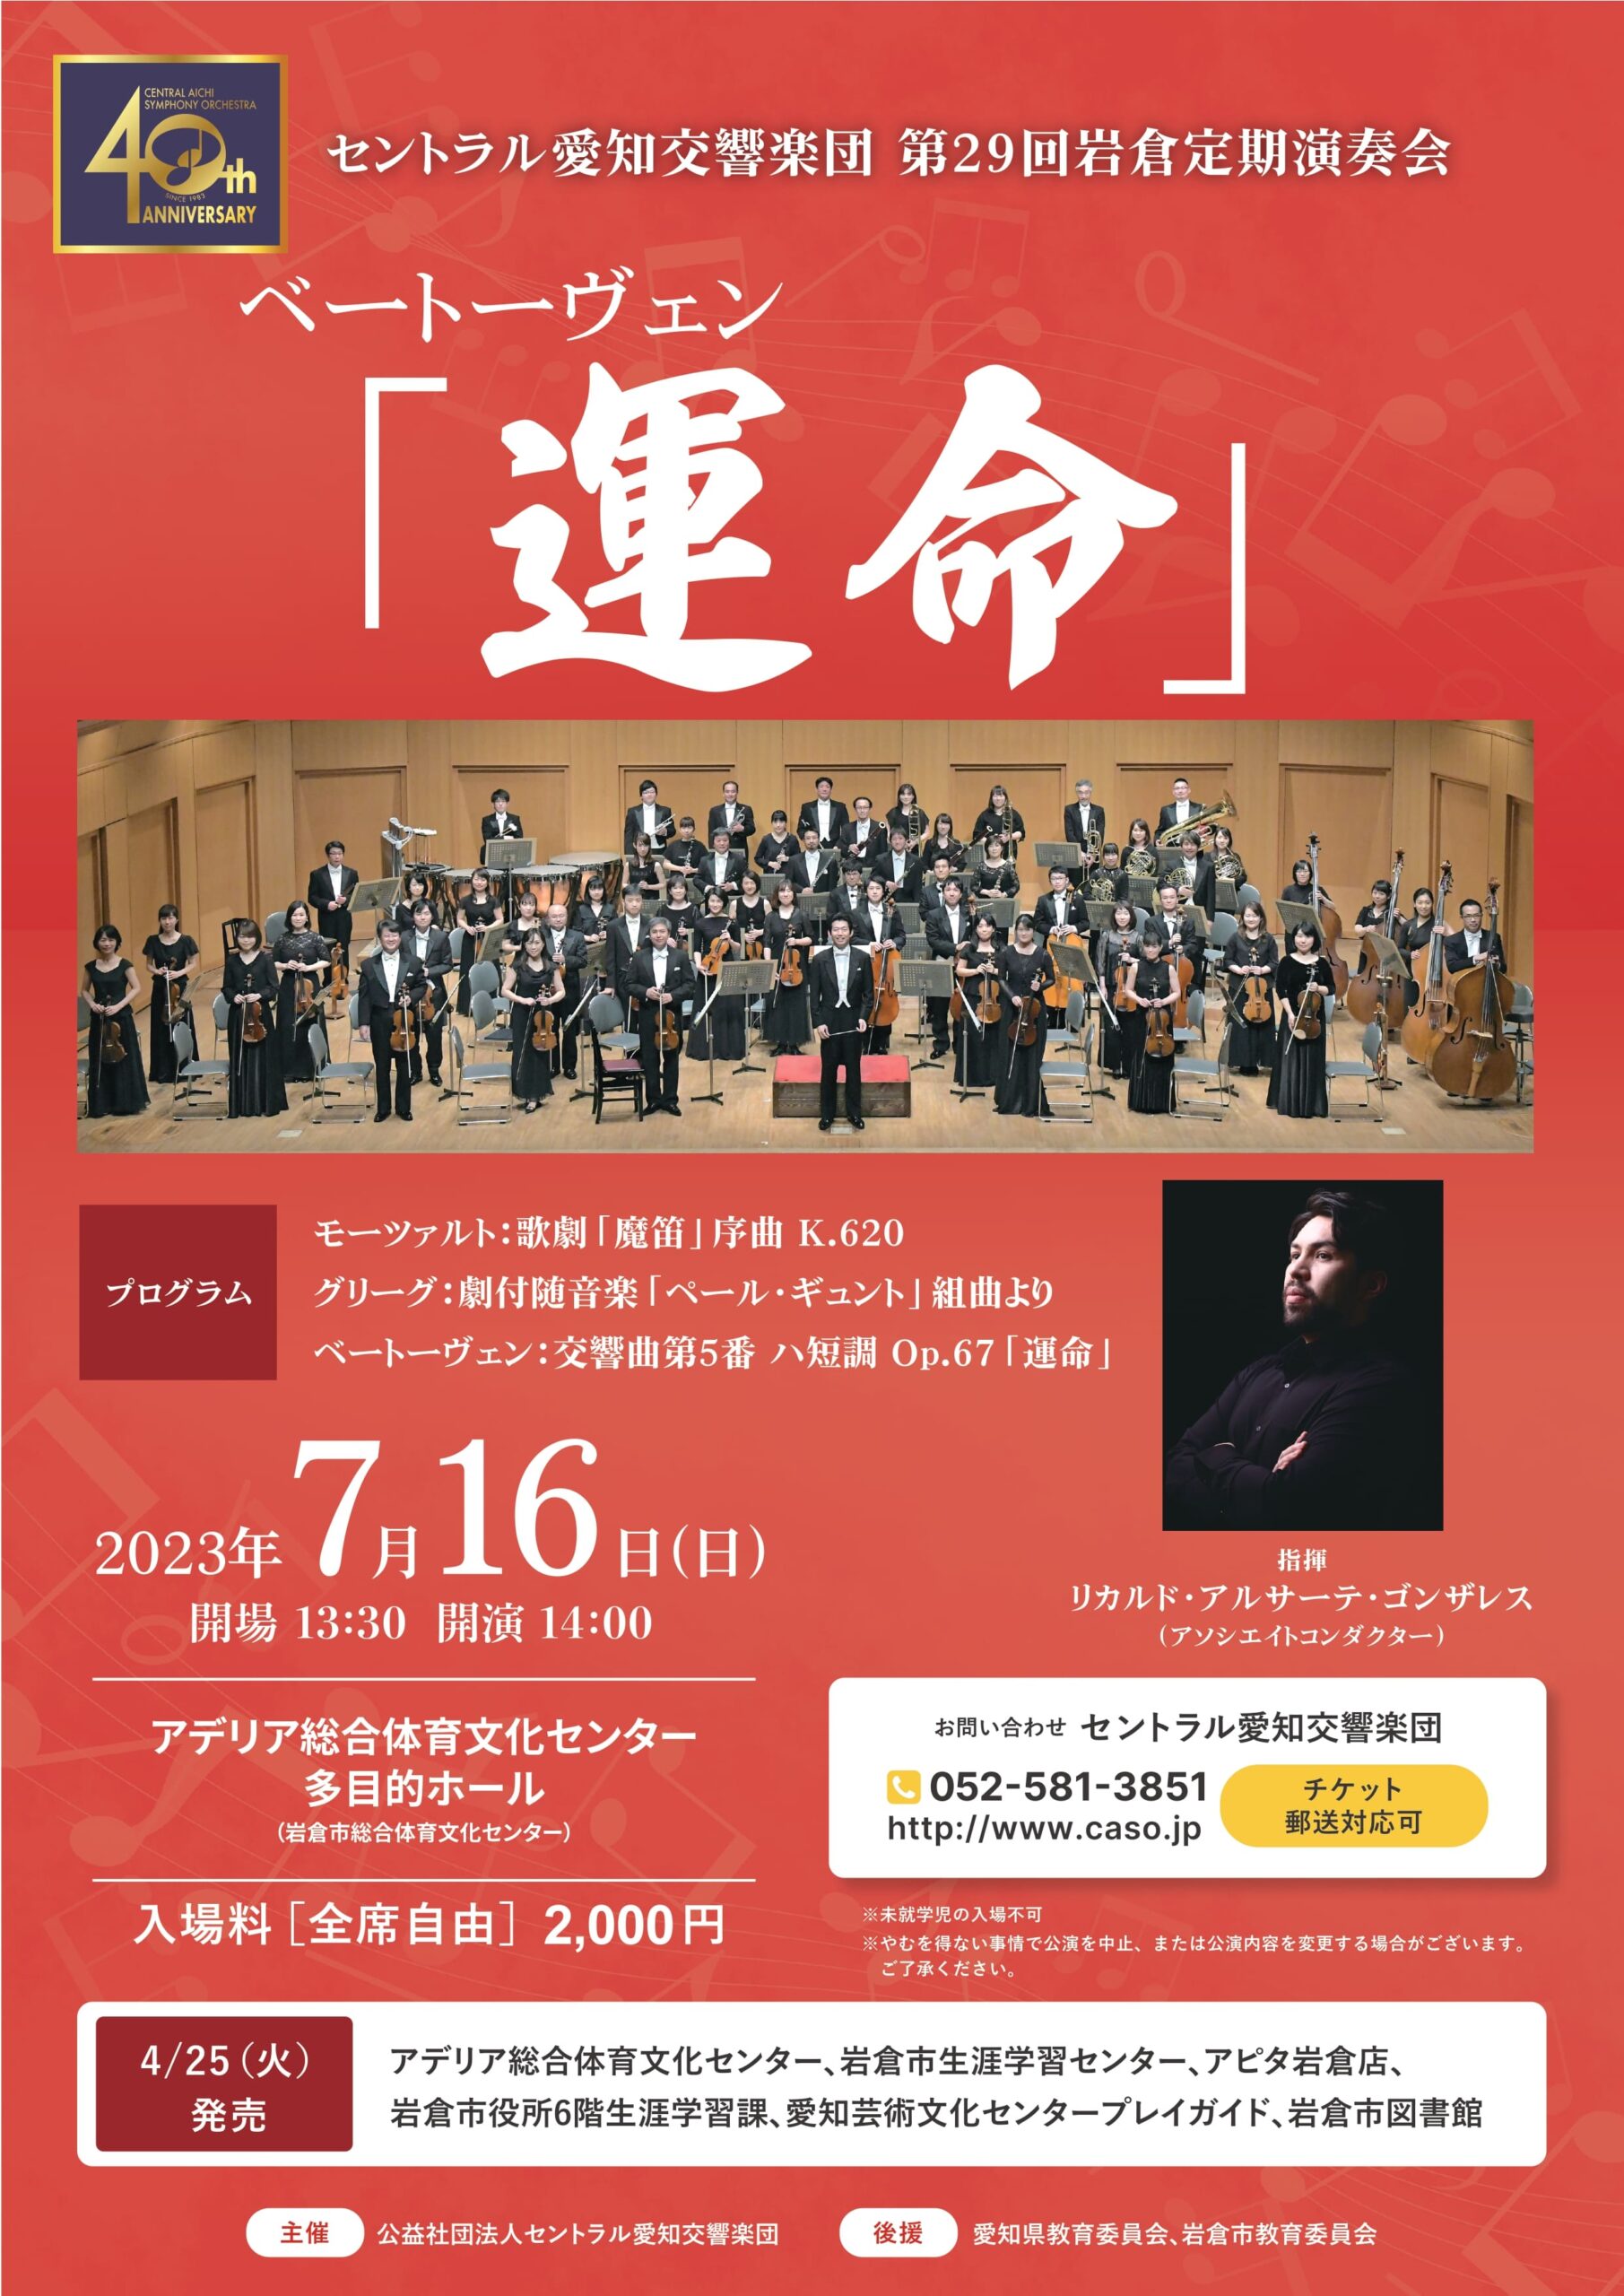 セントラル愛知交響楽団第29回岩倉定期演奏会のフライヤー画像